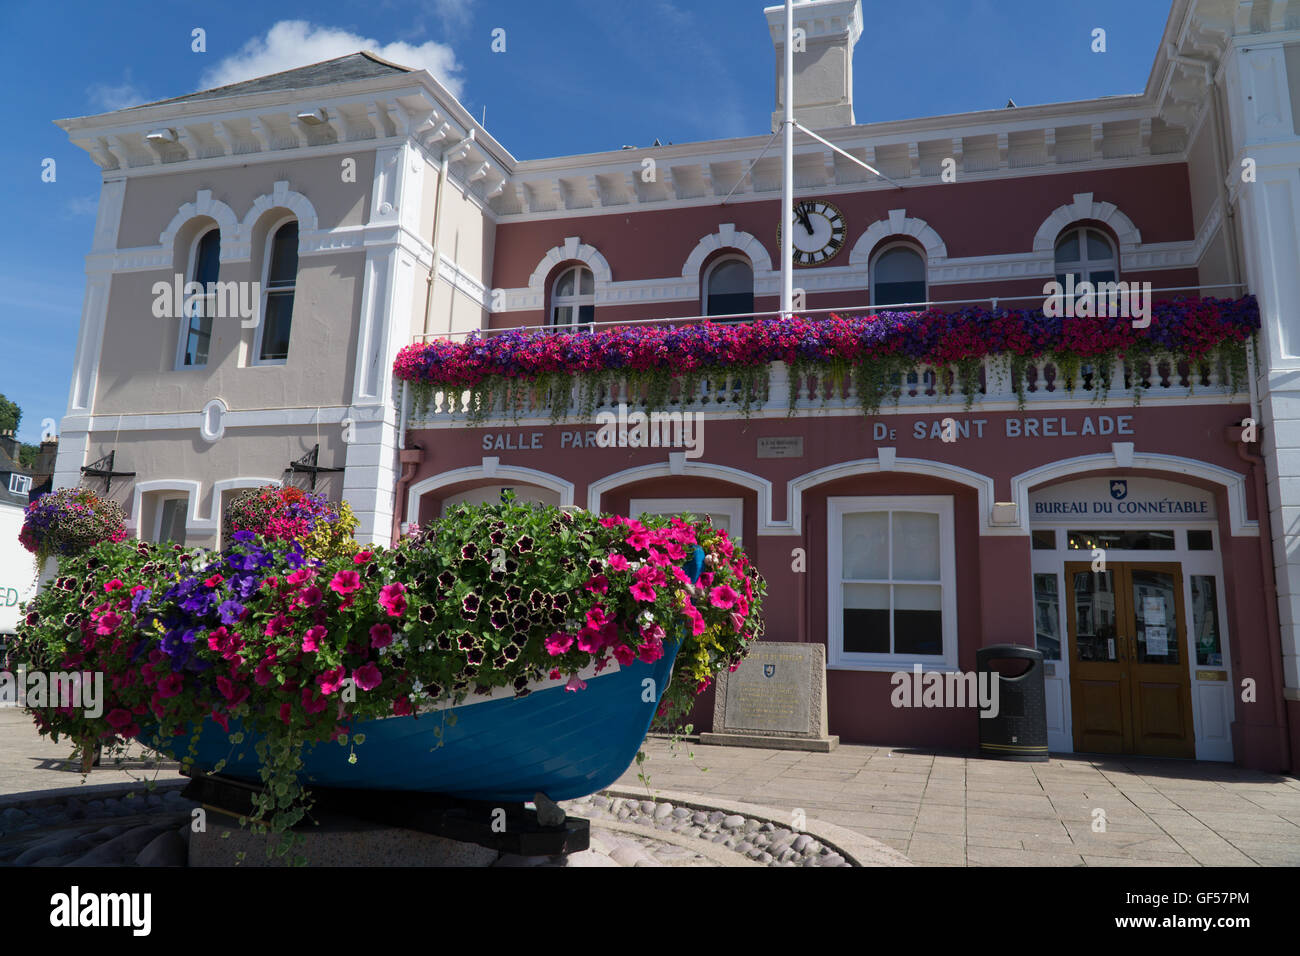 La salle paroissiale de St Brelade avec un affichage coloré de fleurs faisant partie des îles Jersey Paroisse 'bloom' dans la concurrence. Banque D'Images